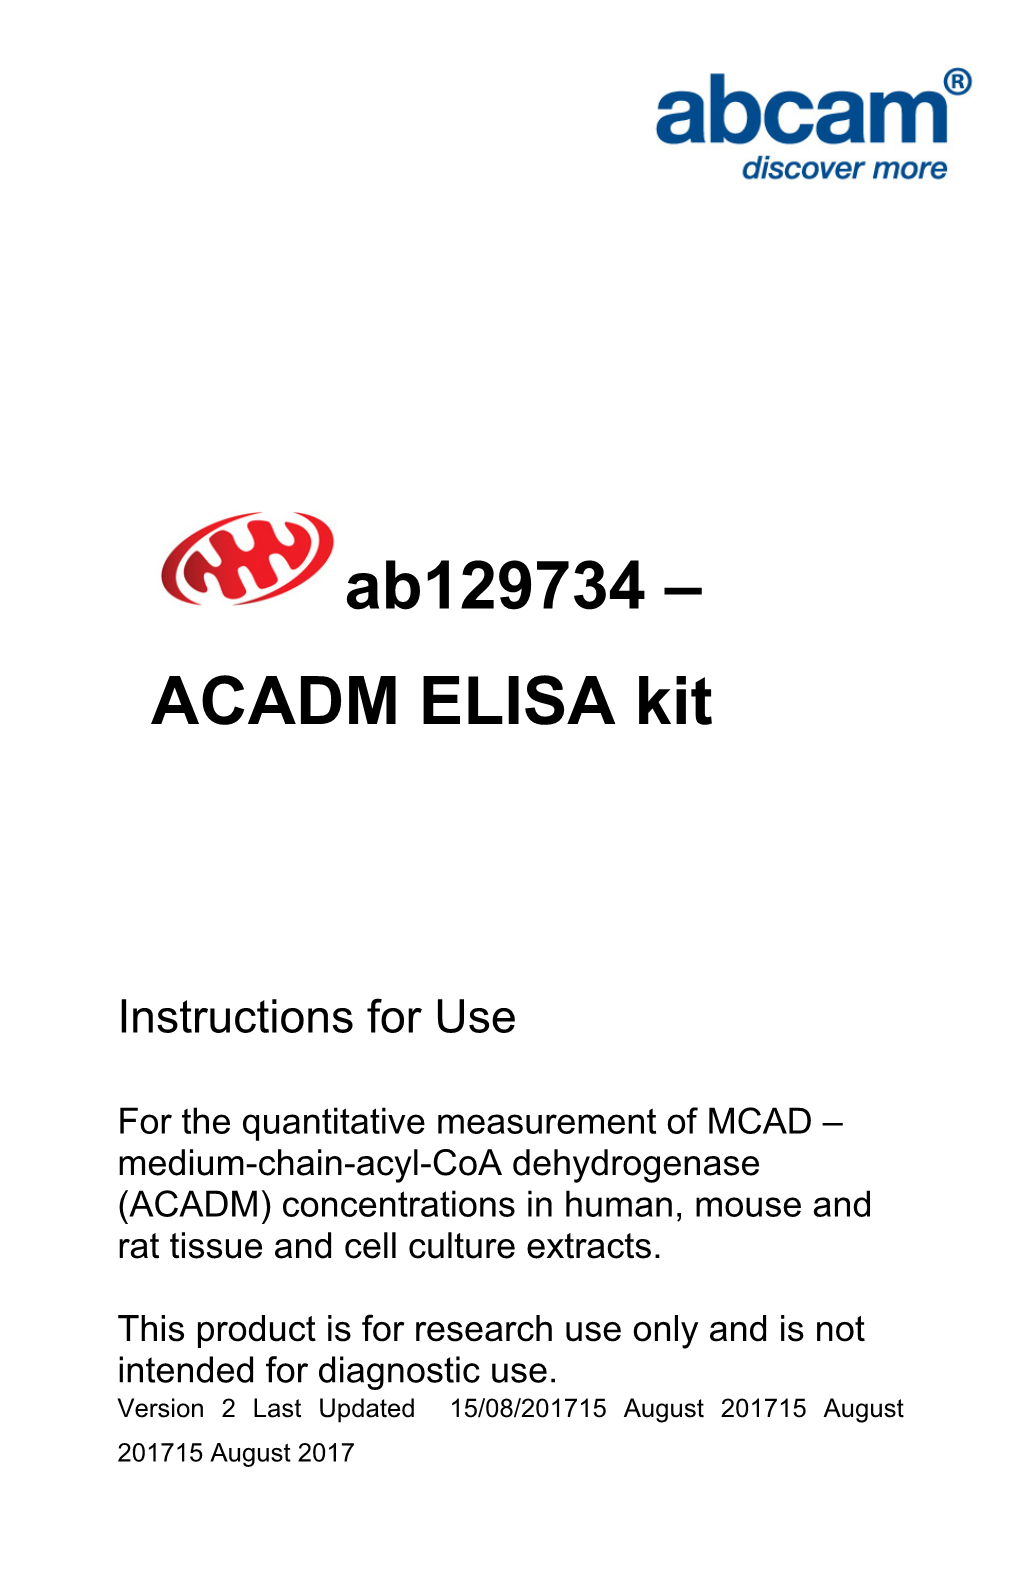 Ab129734 – ACADM ELISA Kit